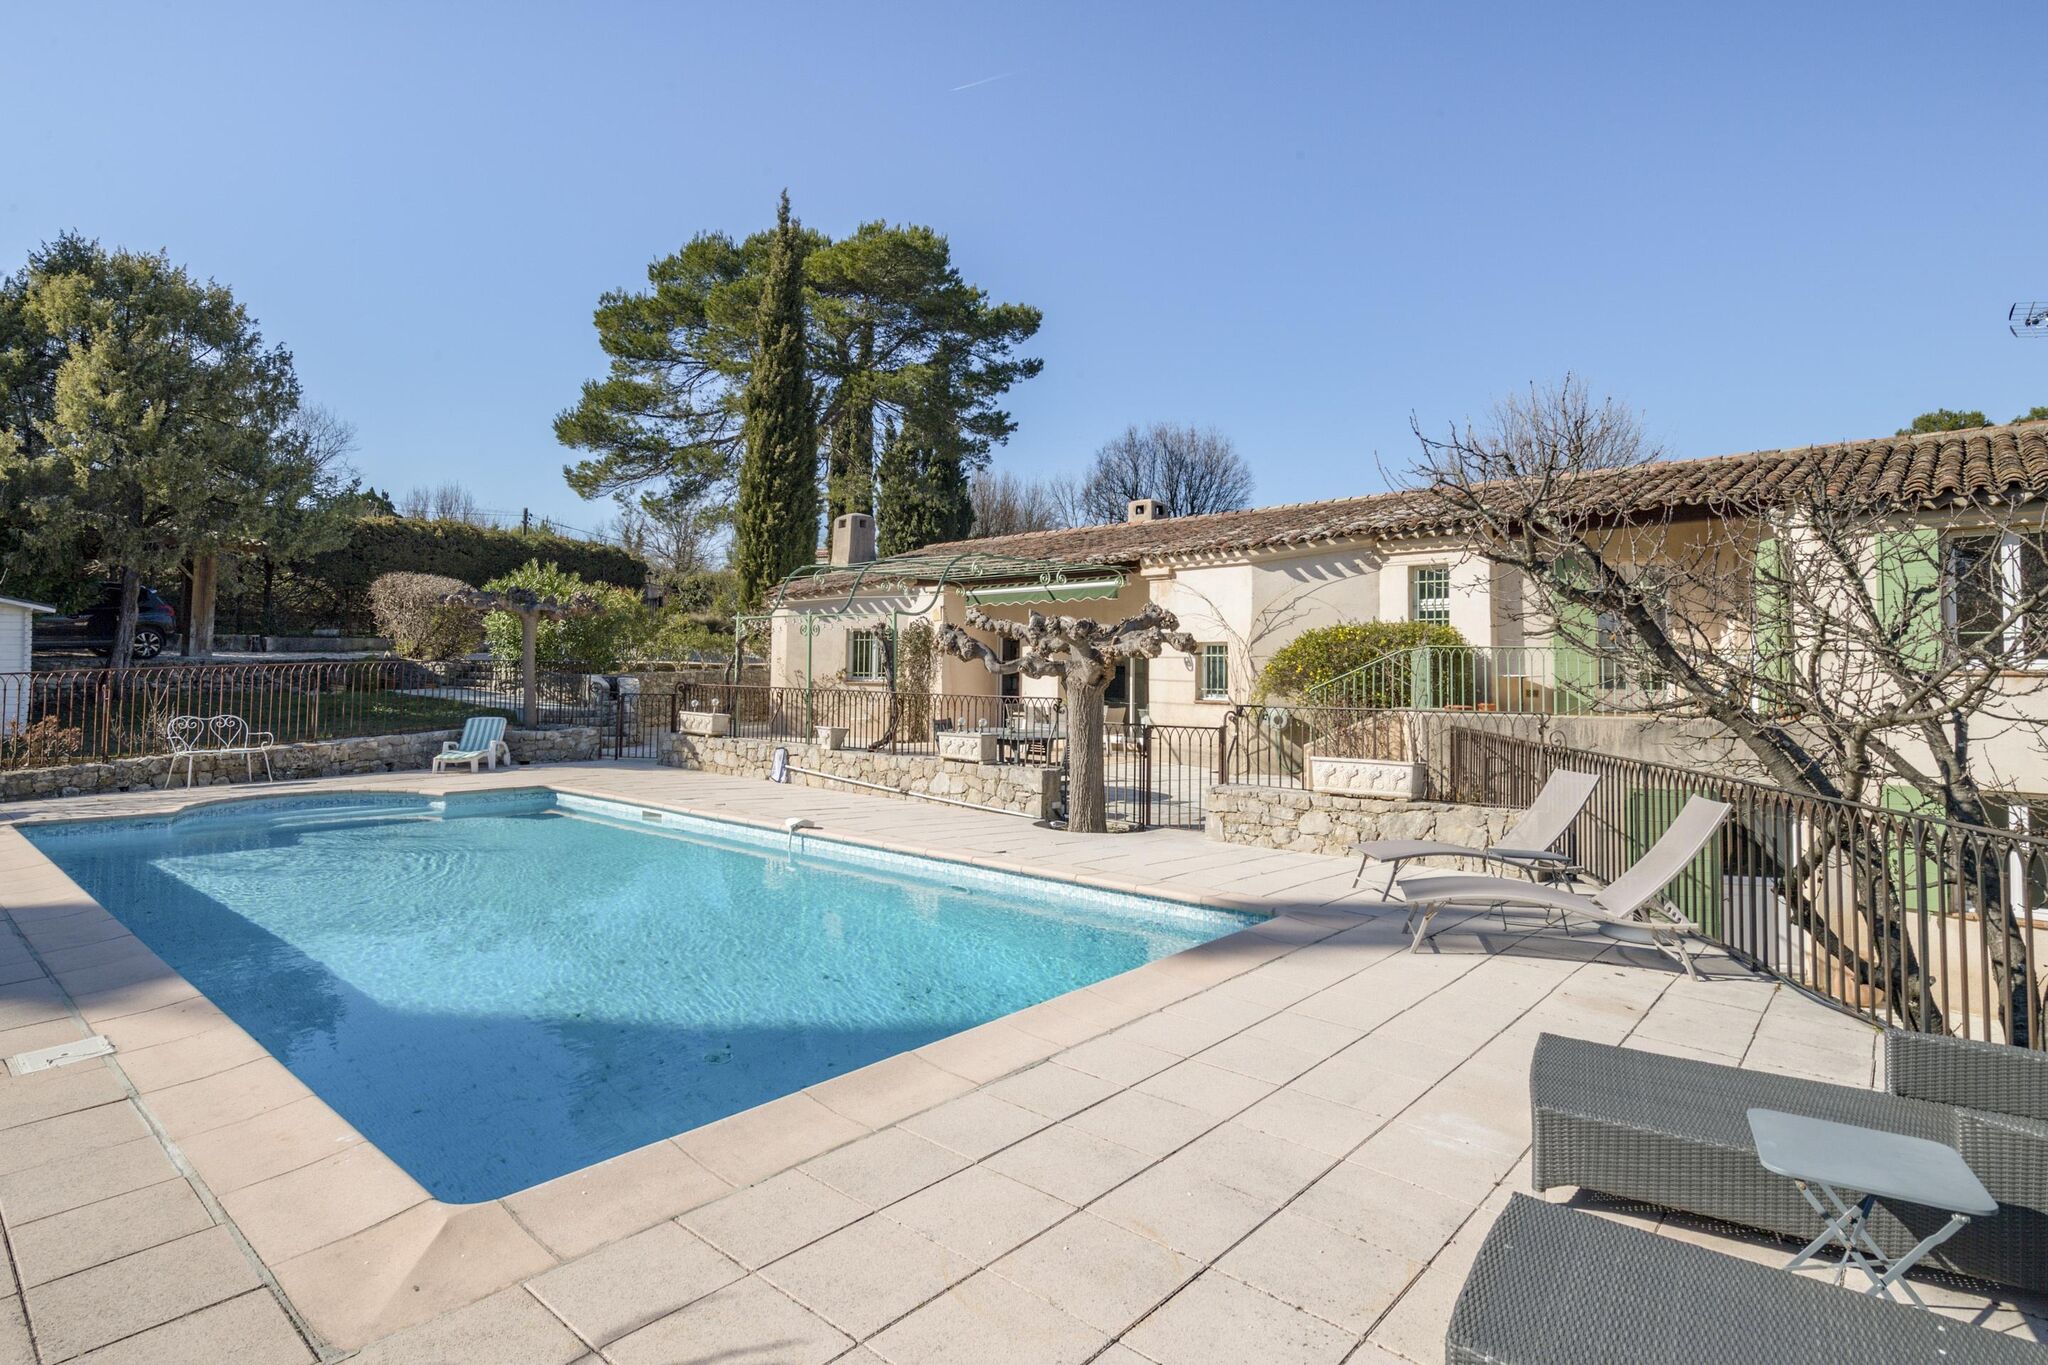 Villa reposante à Caillan avec piscine privée, 30km de Cannes